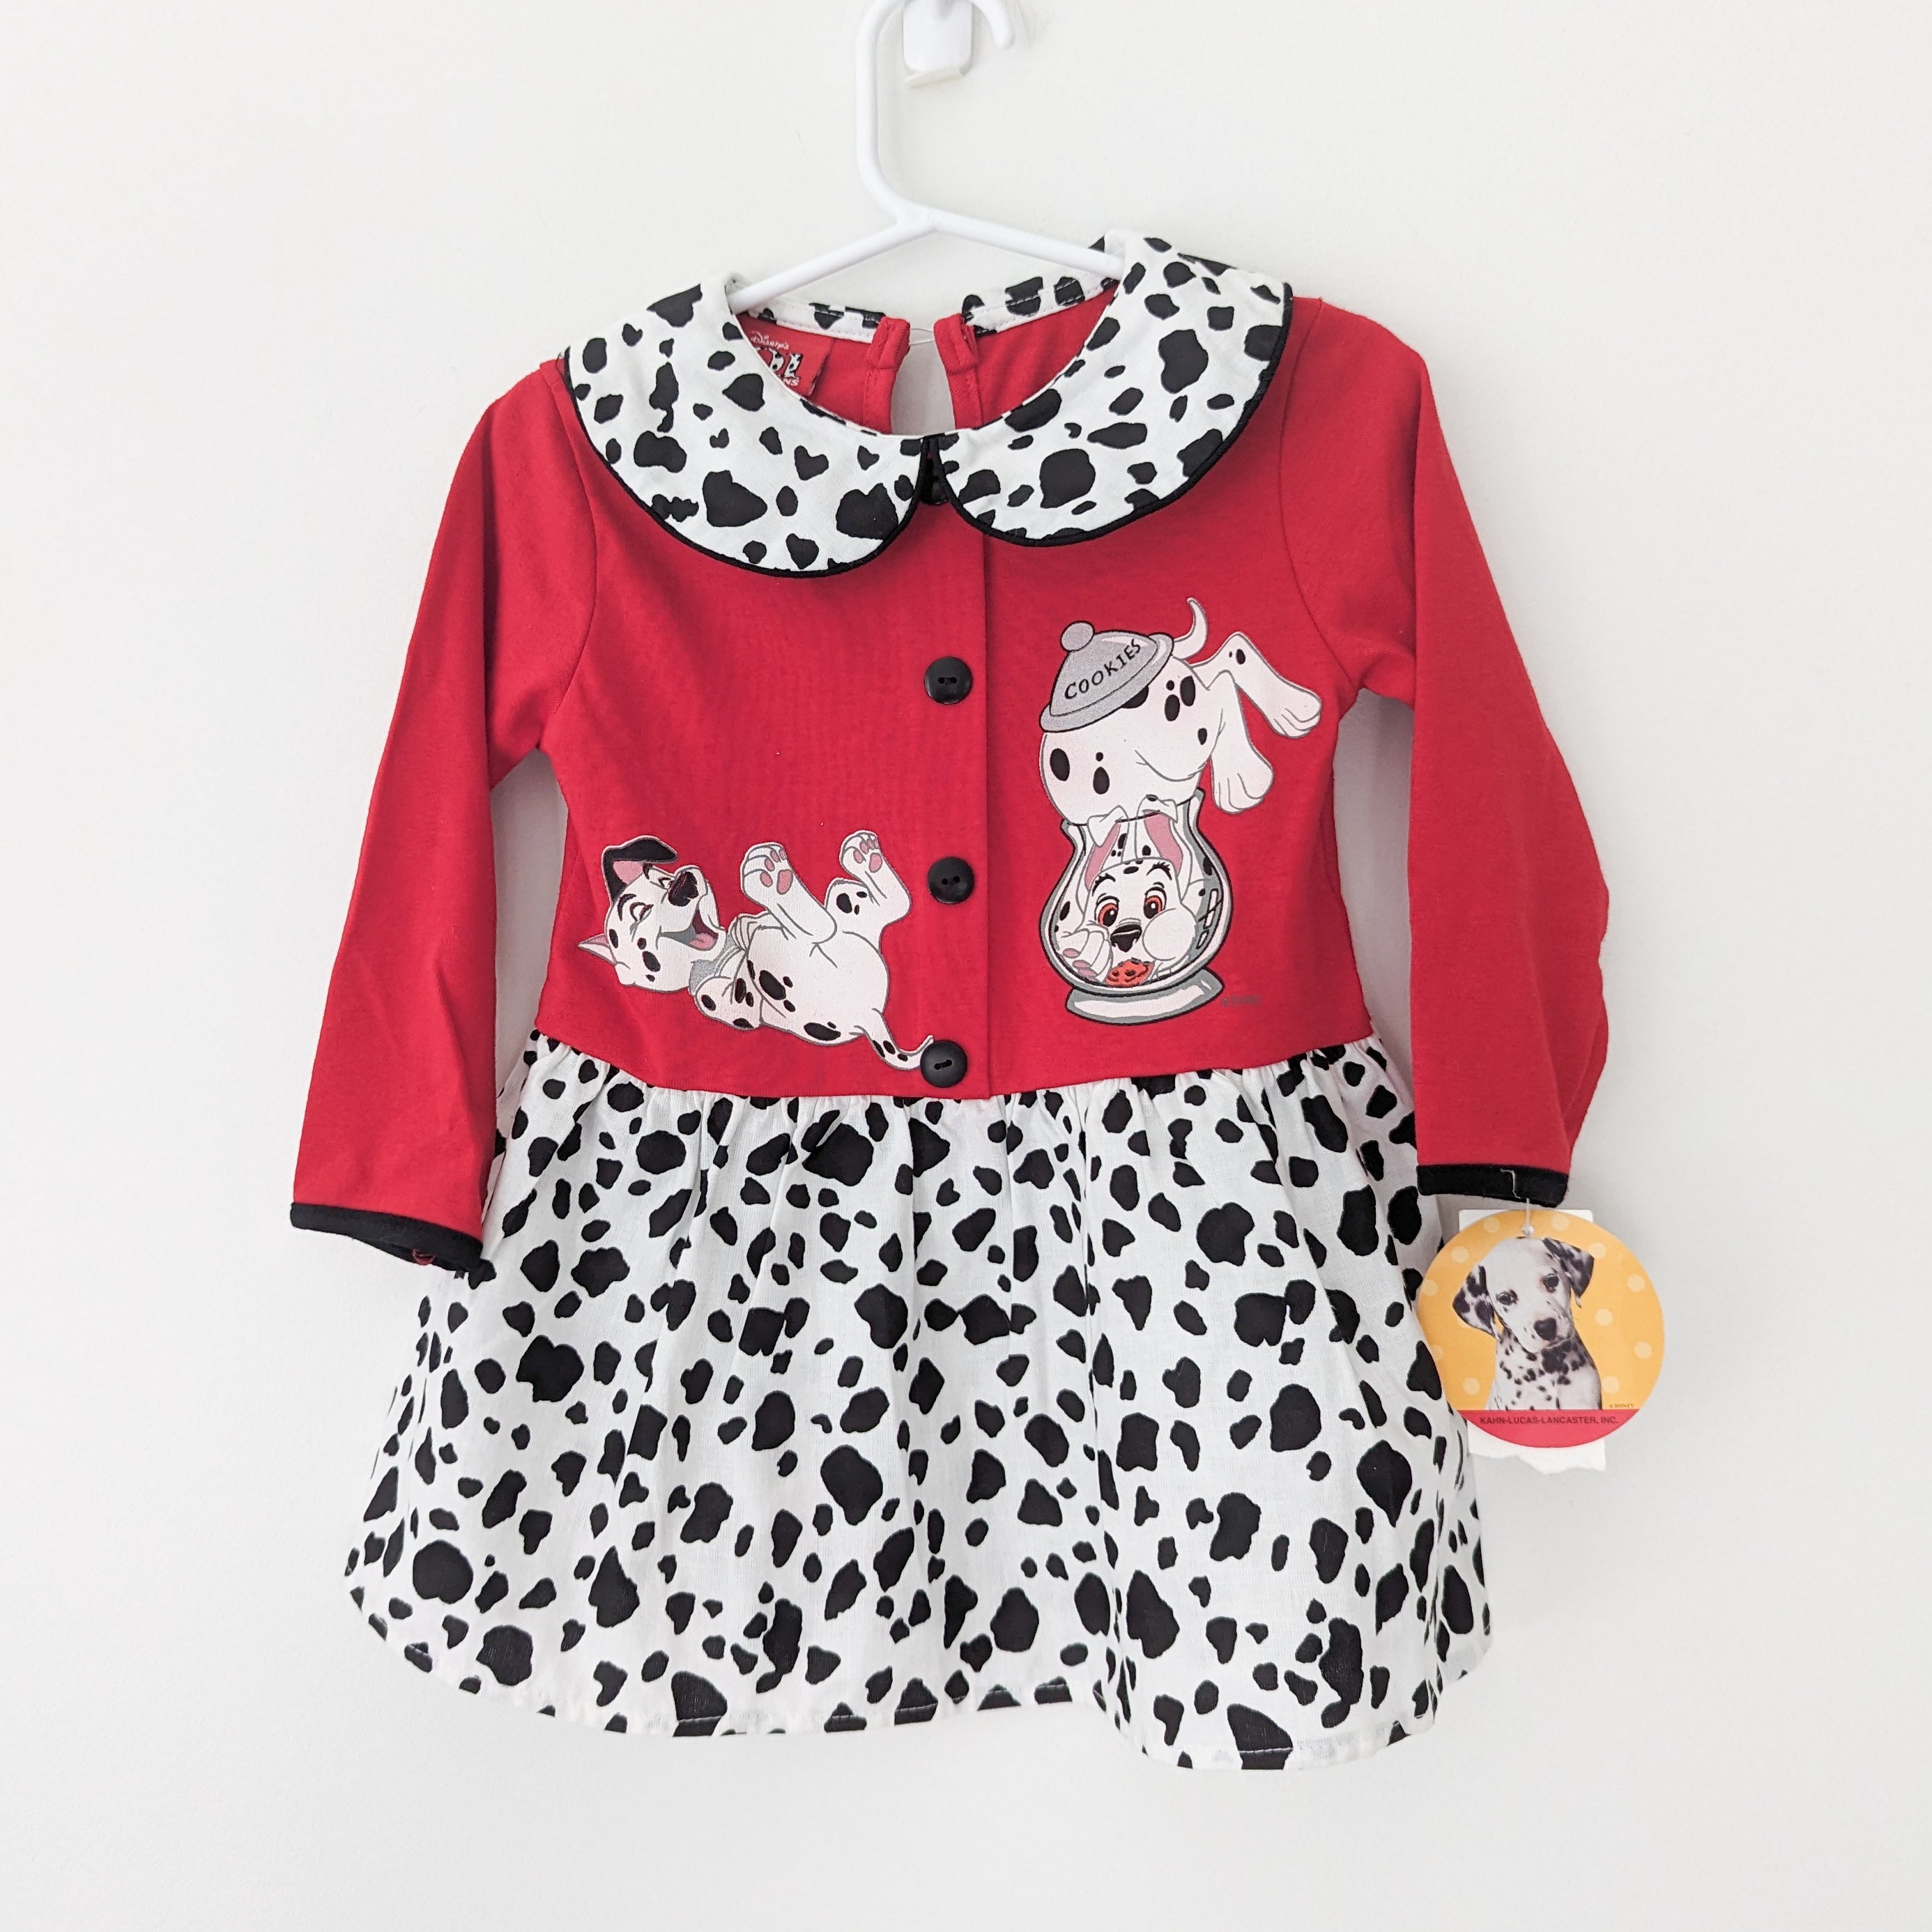 101 Dalmatians Dress • 2T – Small & Kind